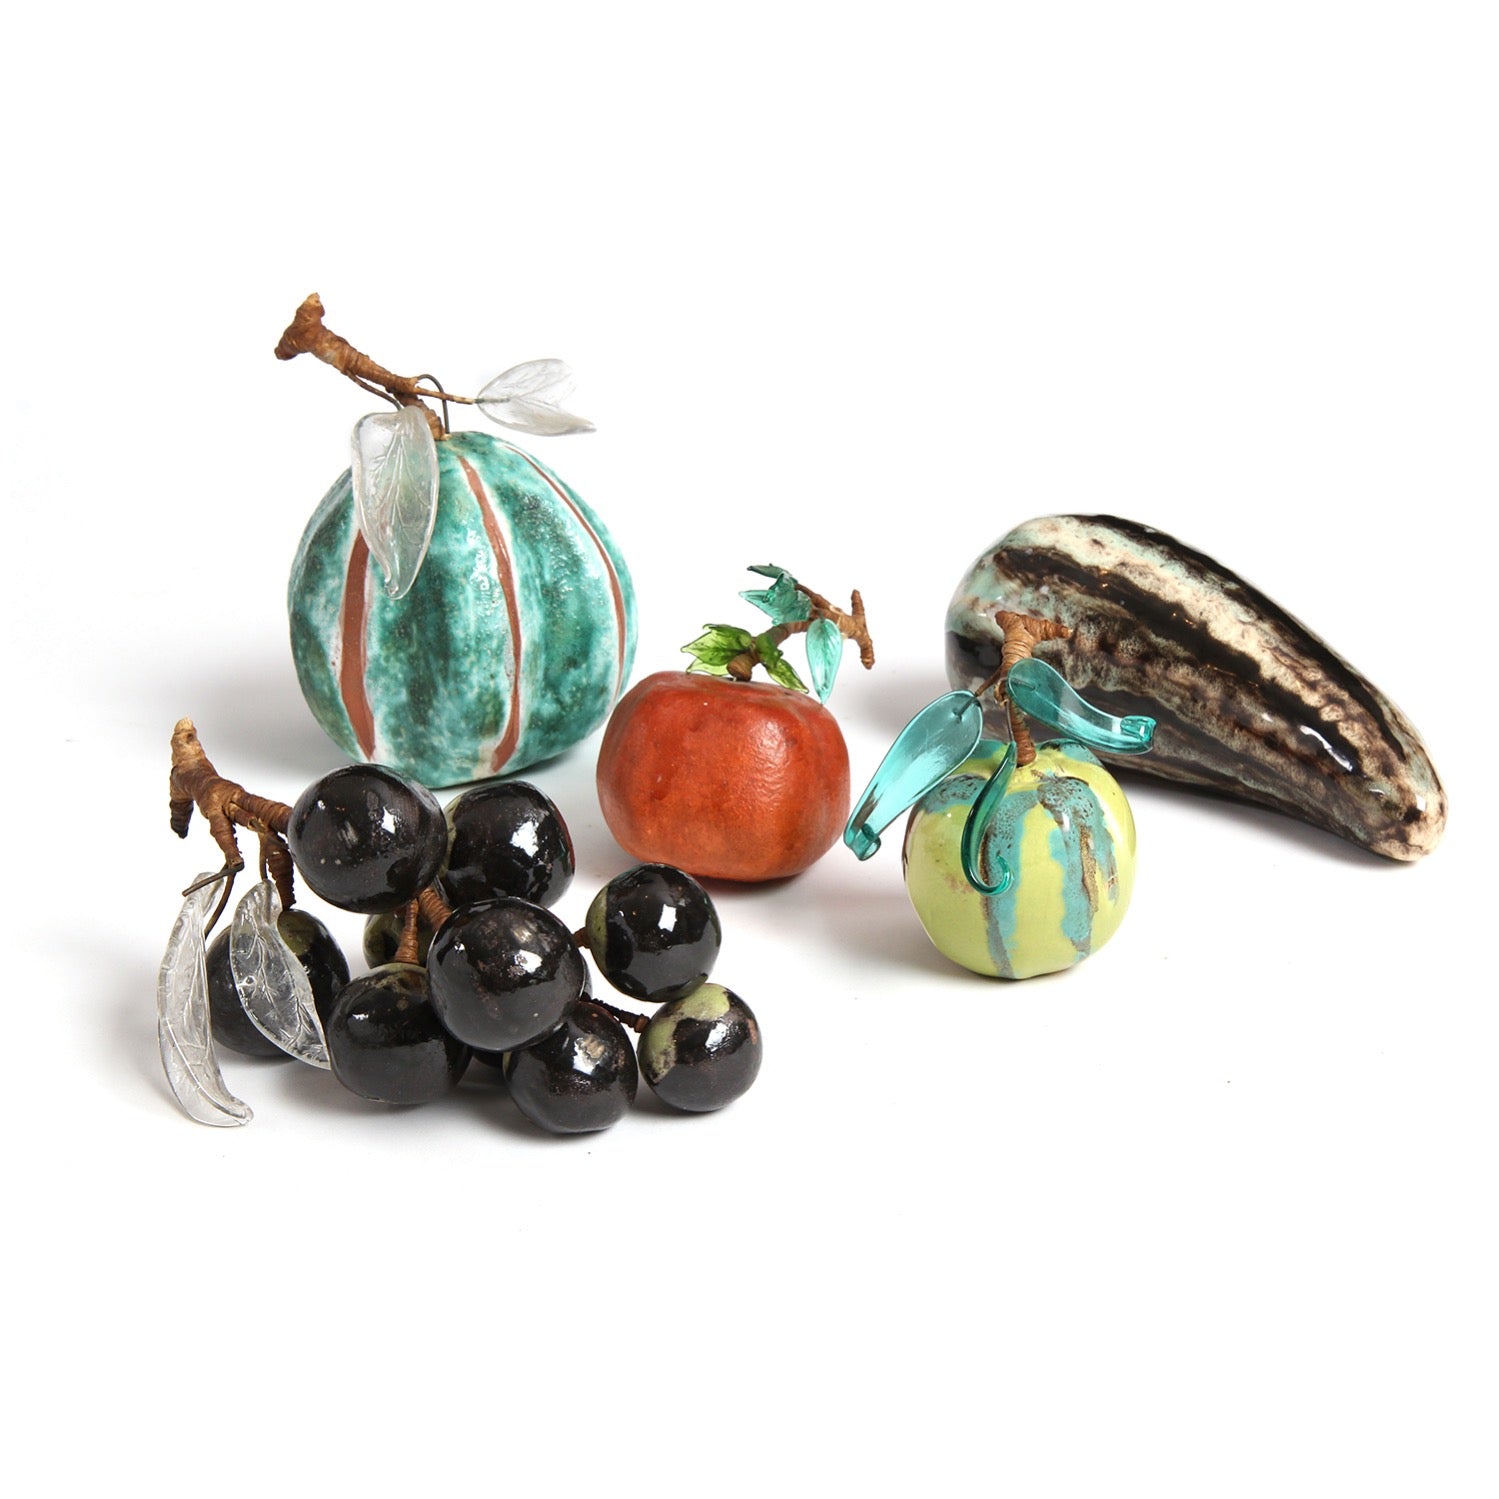 Ceramic Sculptures of Fruit and Vegetables by Marianna von Allesch